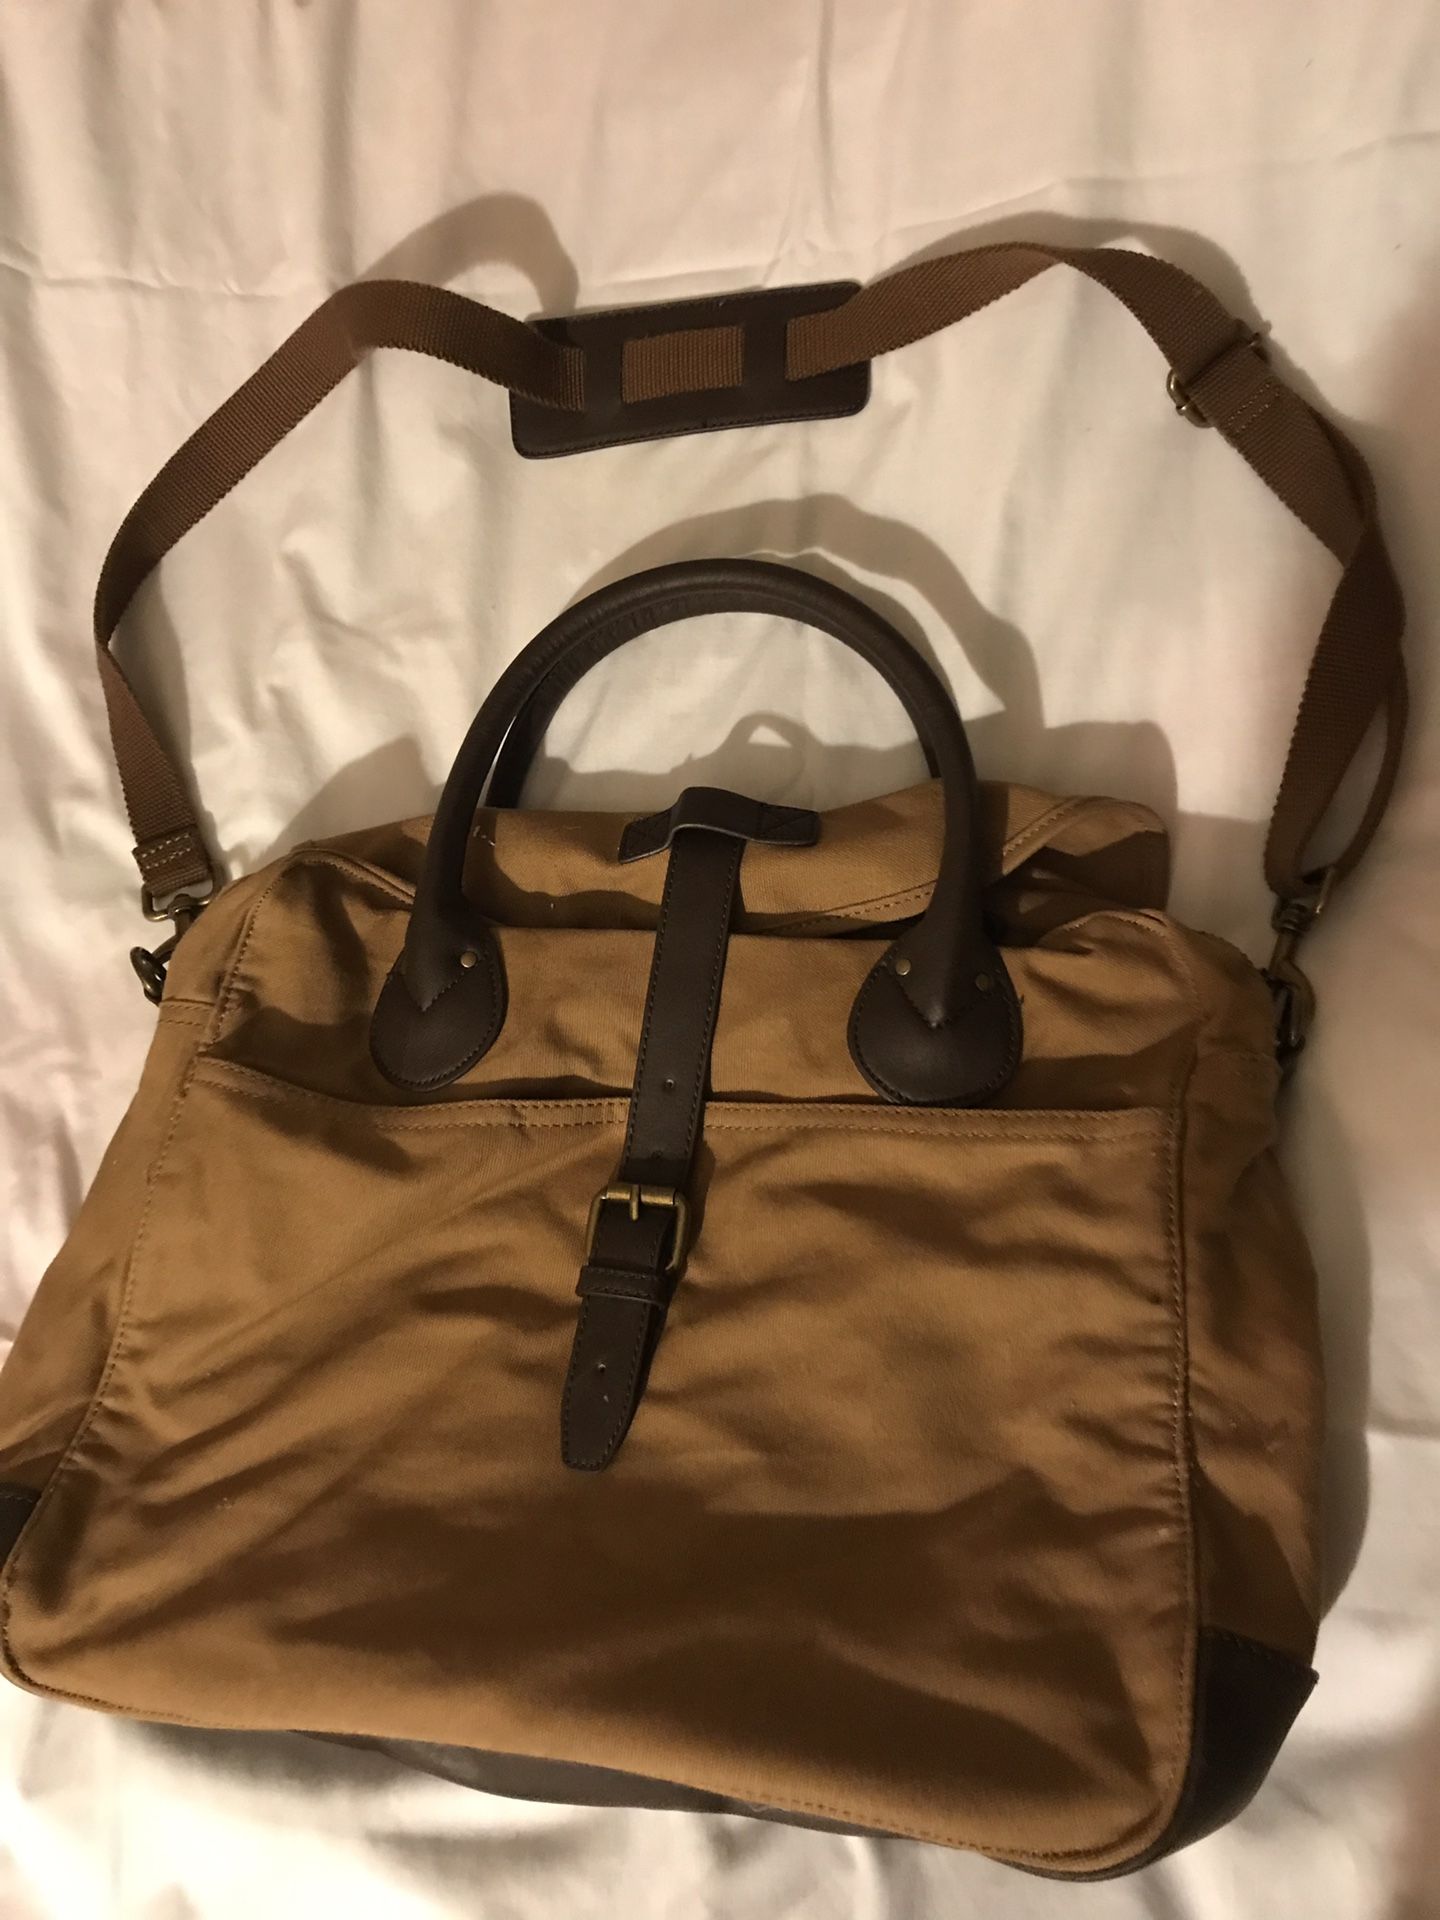 J CREW Carson Laptop Bag, Brown Canvas Satchel Messenger Bag